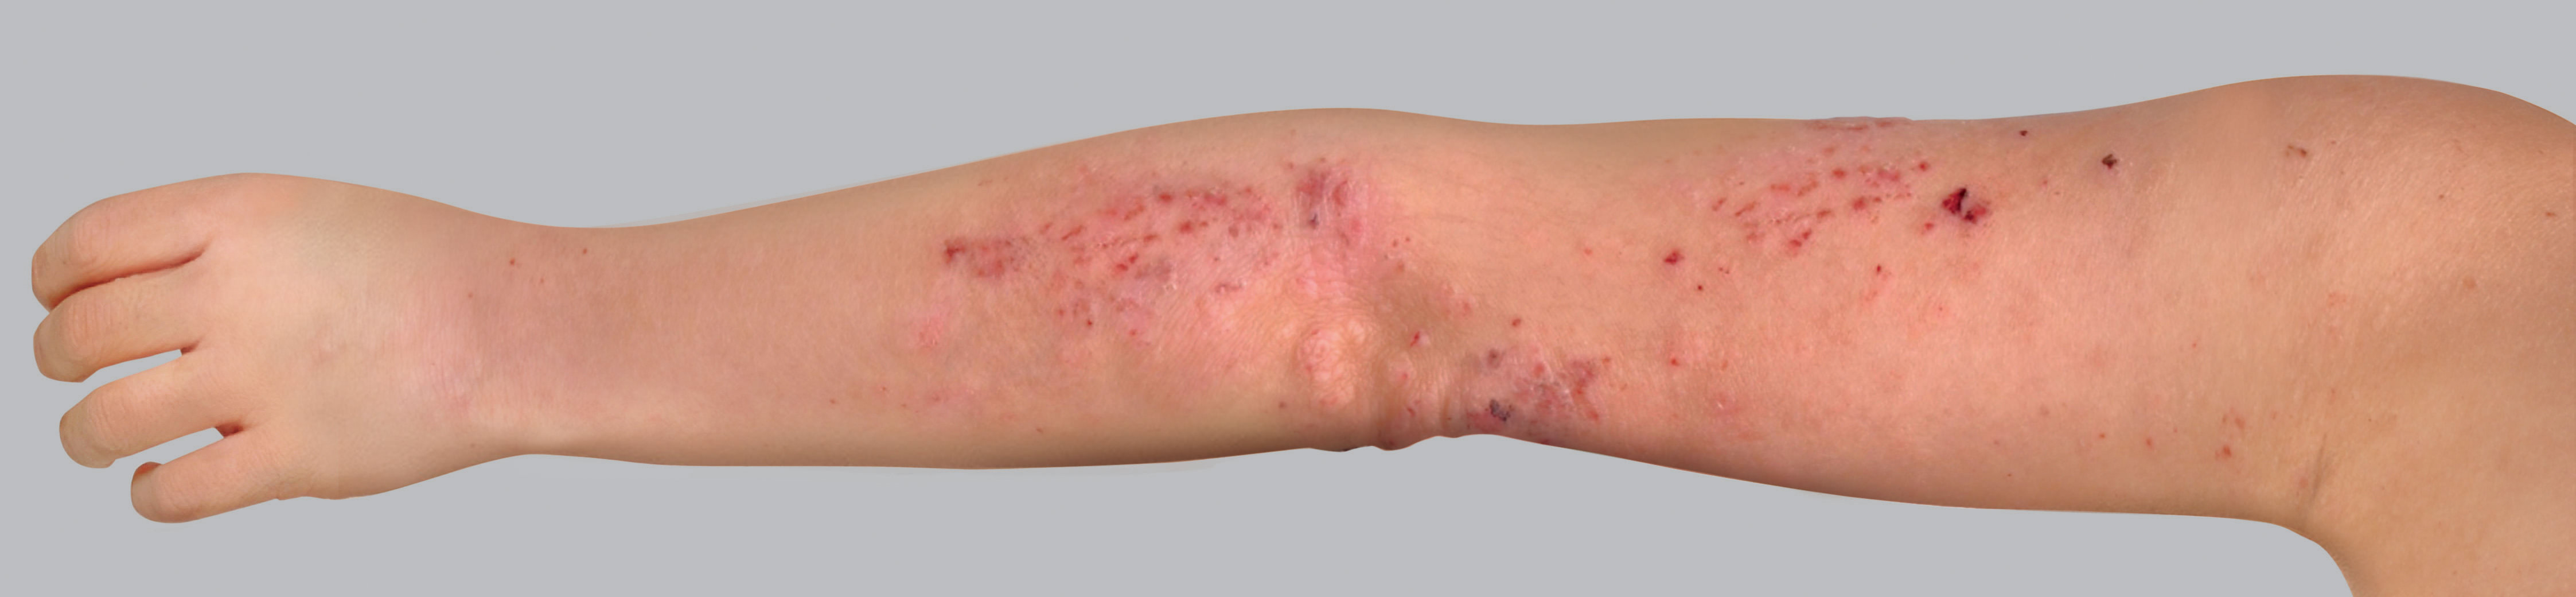 Sintomi dell'eczema atopico: lesioni da grattamento o escoriazioni